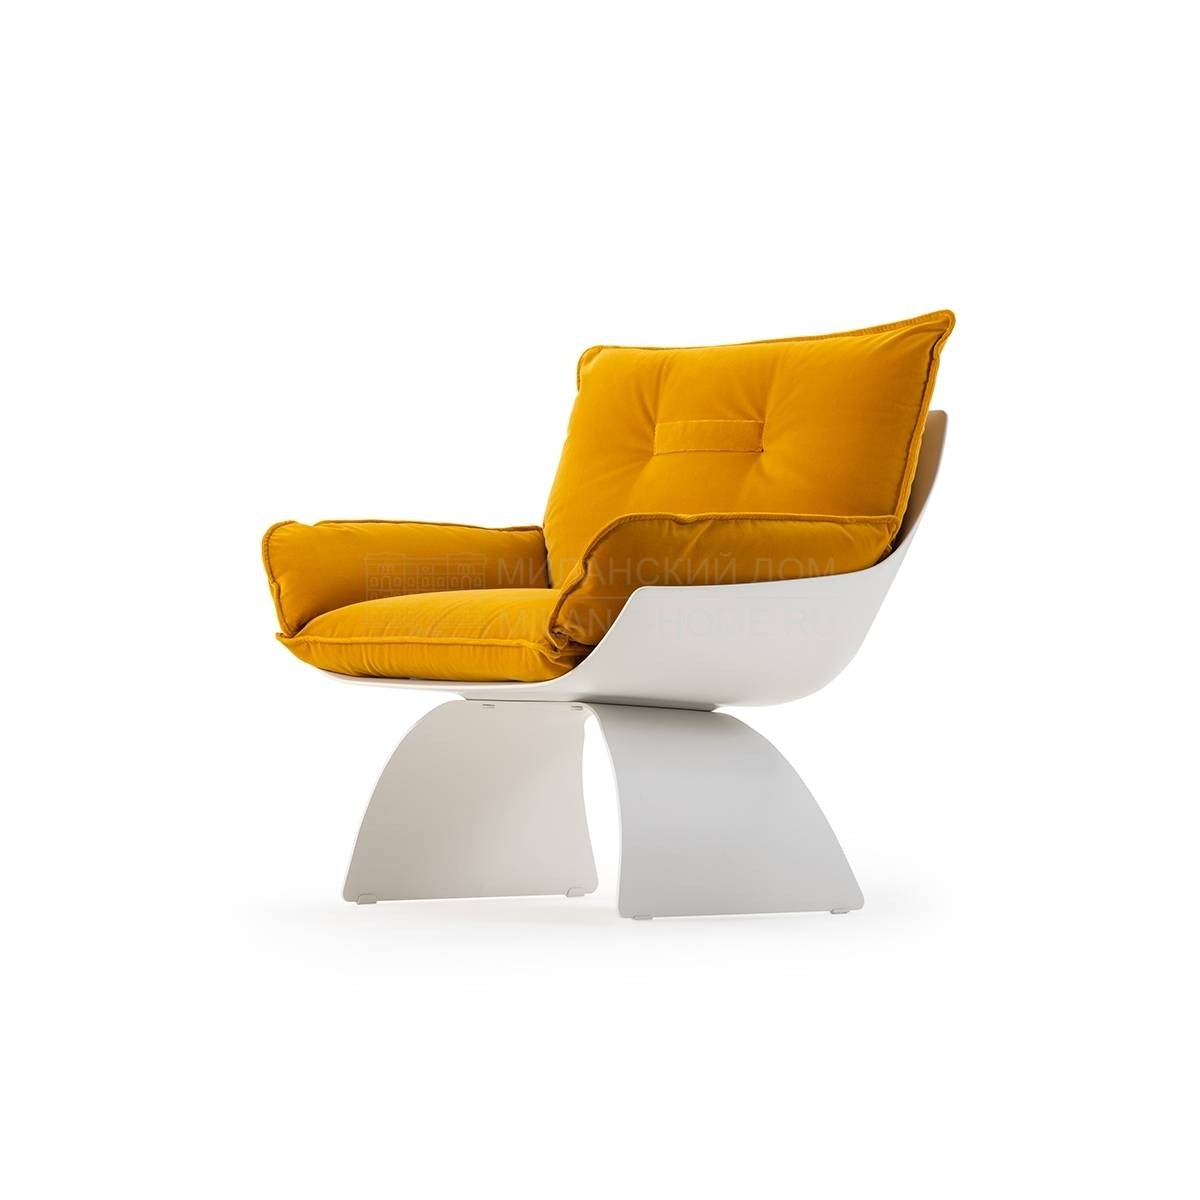 Кресло Silhouette armchair из Италии фабрики TURRI